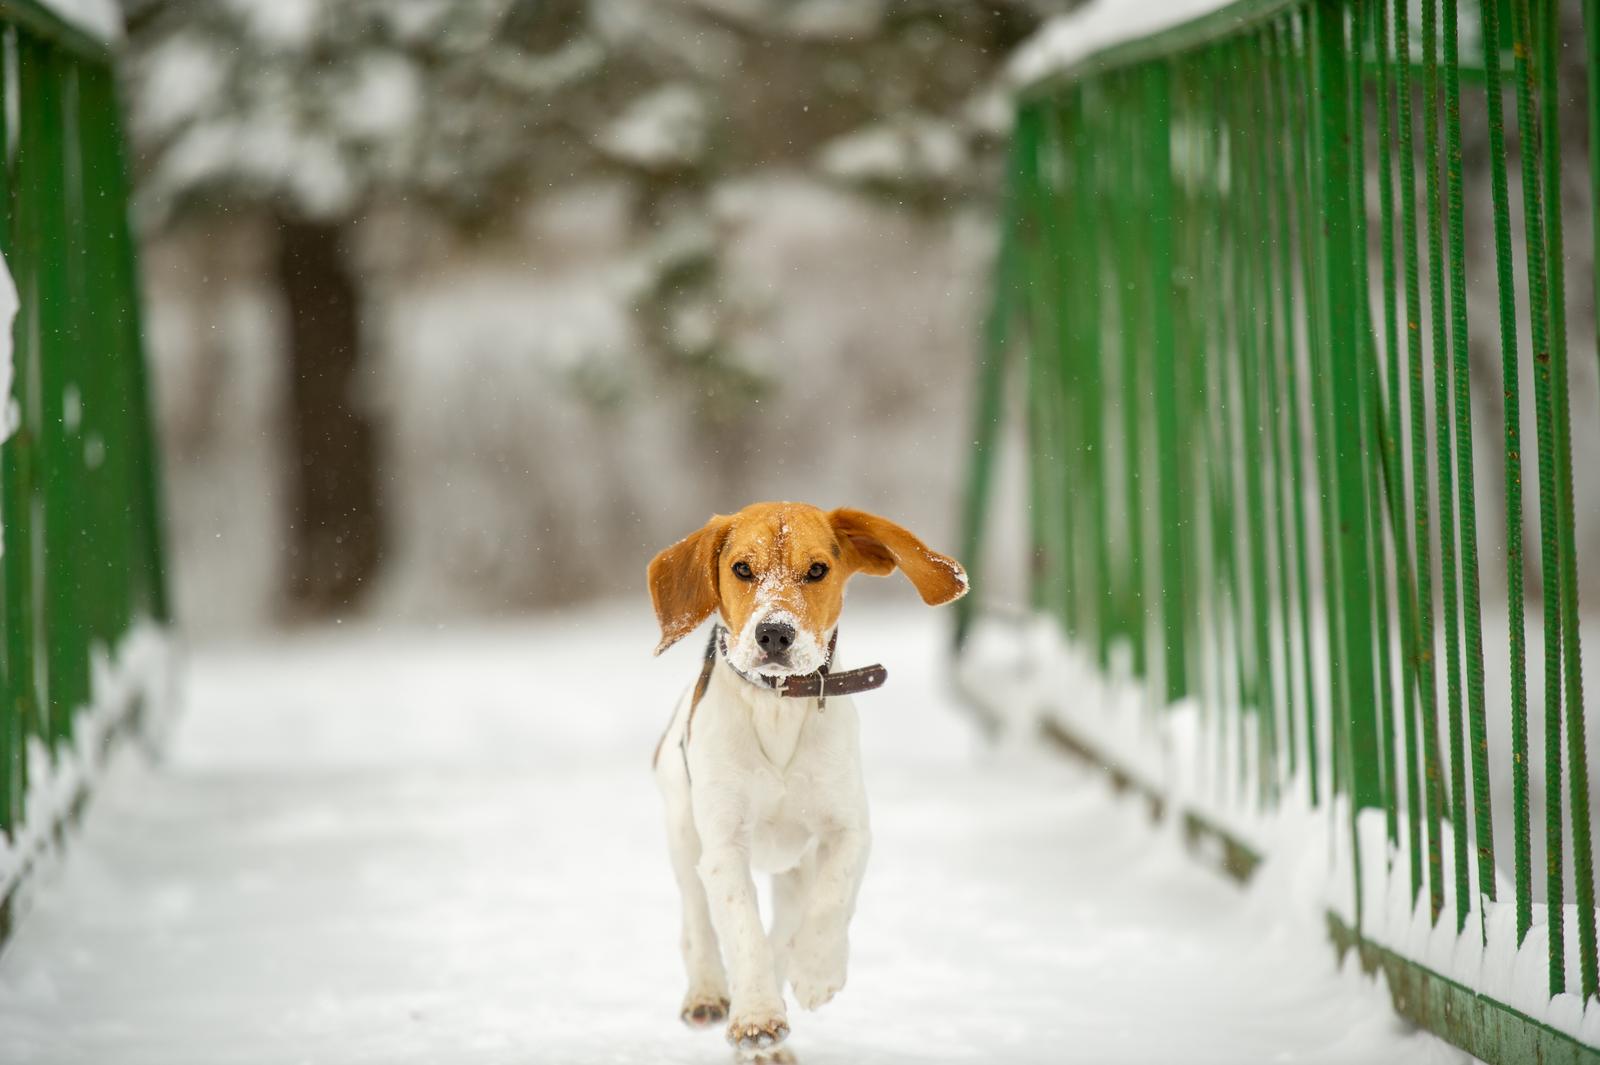 Pies beagle ile kosztuje - na co zwrócić uwagę przed zakupem